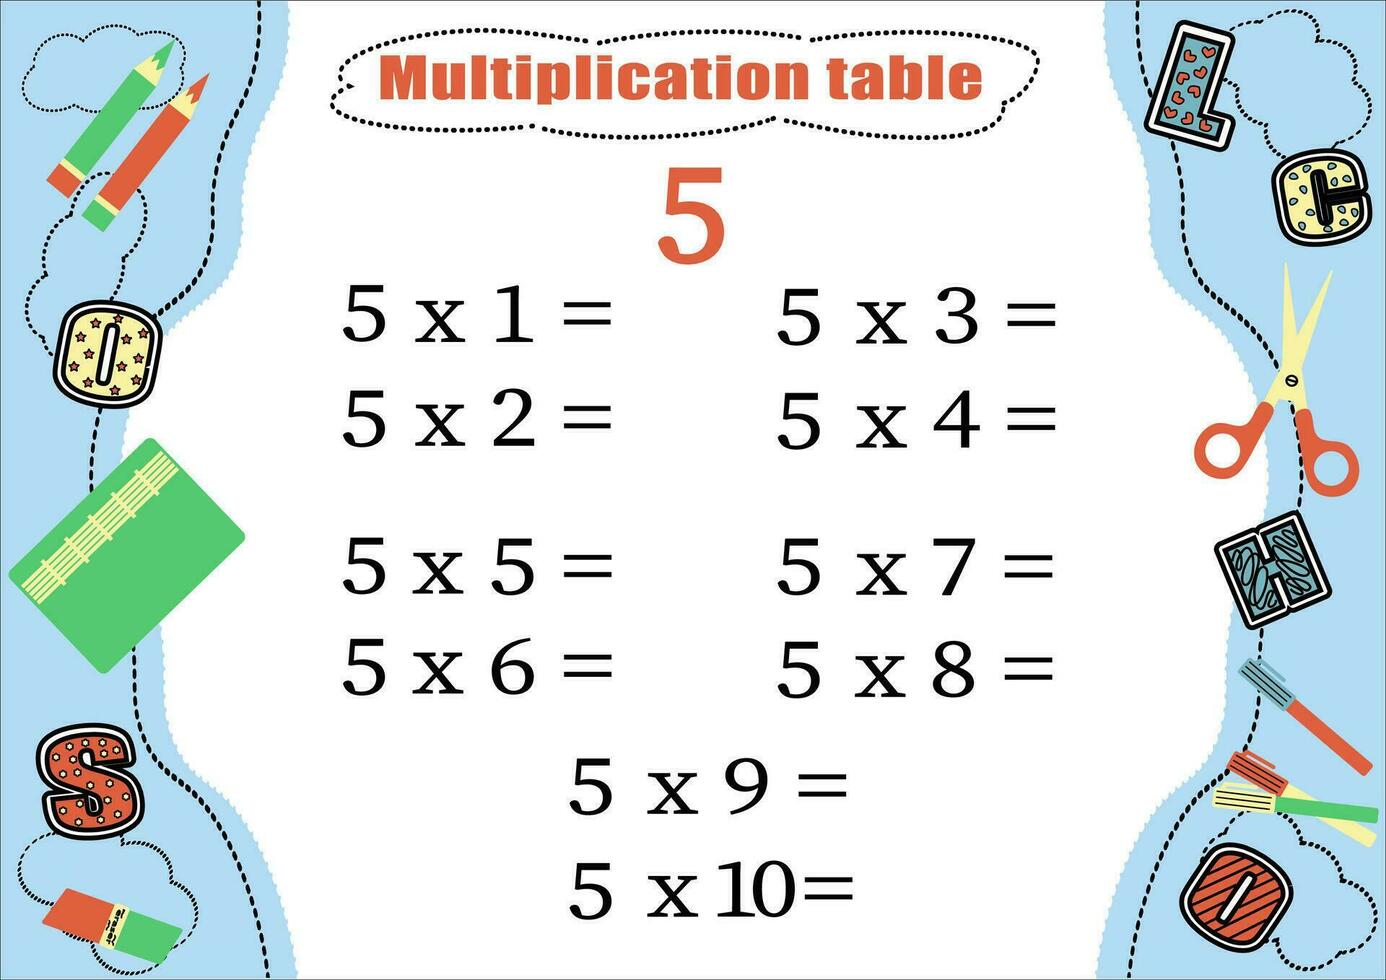 Multiplikation Tabelle durch 5 mit ein Aufgabe zu konsolidieren Wissen von Multiplikation. bunt Karikatur Multiplikation Tabelle Vektor zum Lehren Mathematik. Schule Schreibwaren. eps10